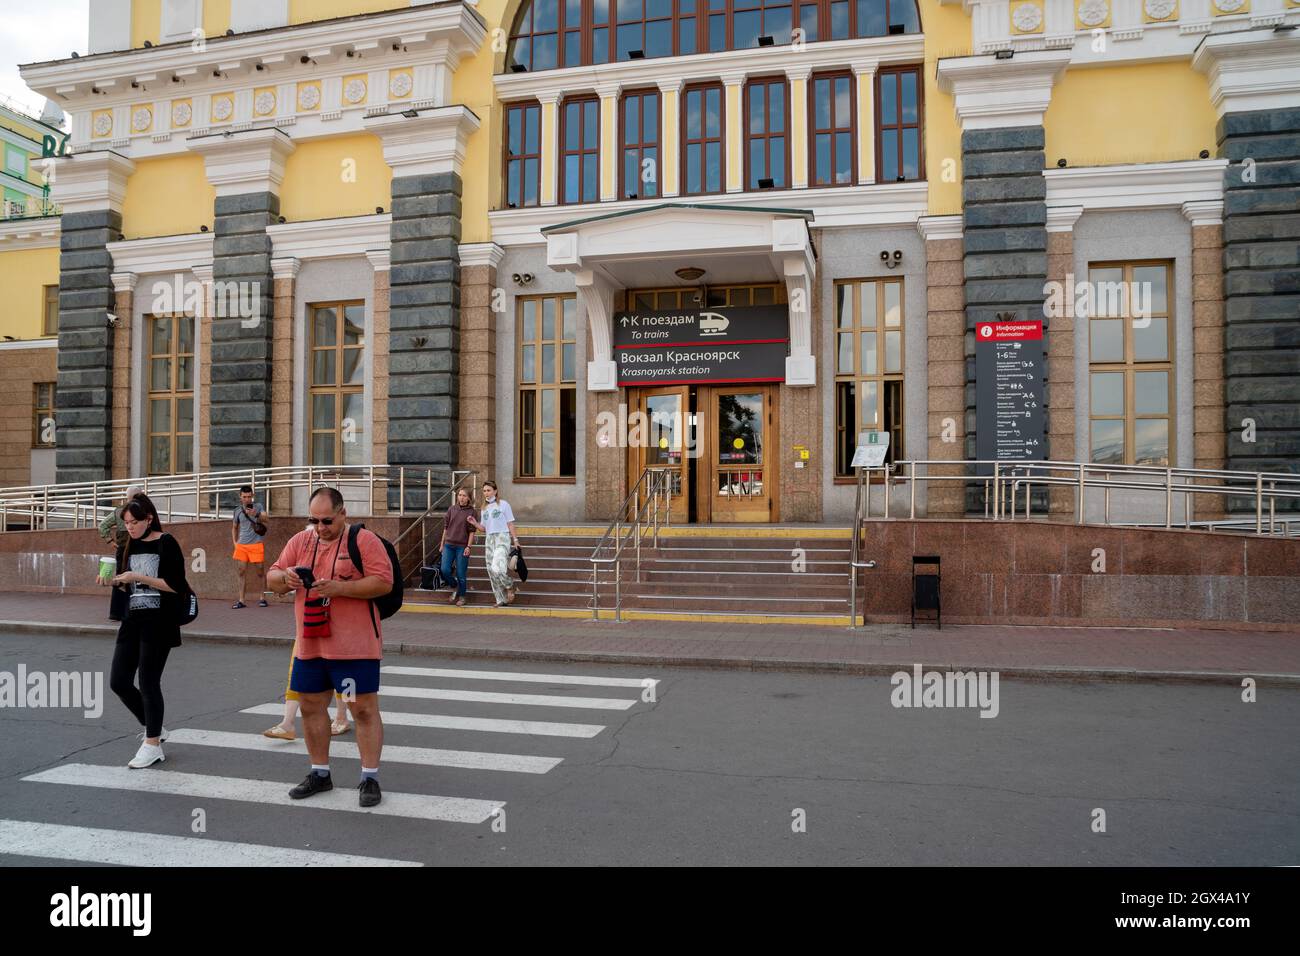 La gente cammina lungo il passaggio pedonale dall'ingresso centrale della stazione ferroviaria principale della città con un tabellone elettronico in russo. Foto Stock